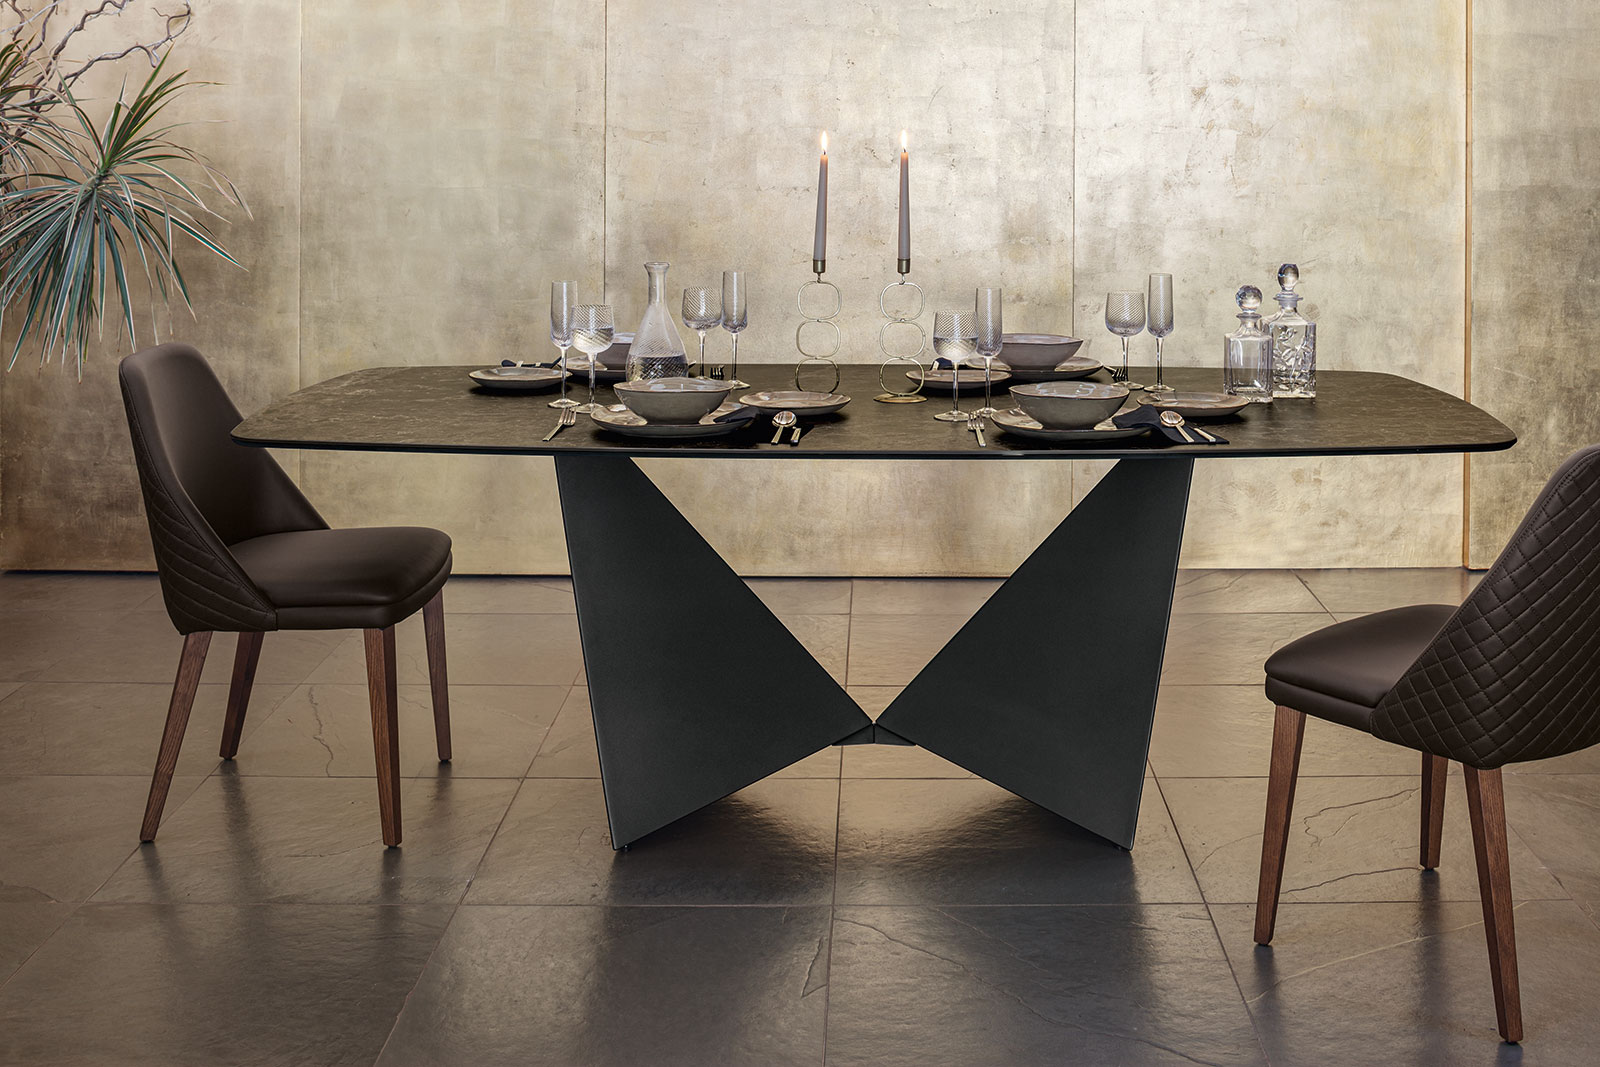 Le plateau en finition Dark Emperador et les formes du top et de la base, donnent élégance à cette table à manger en céramique exceptionnelle. Made in Italy